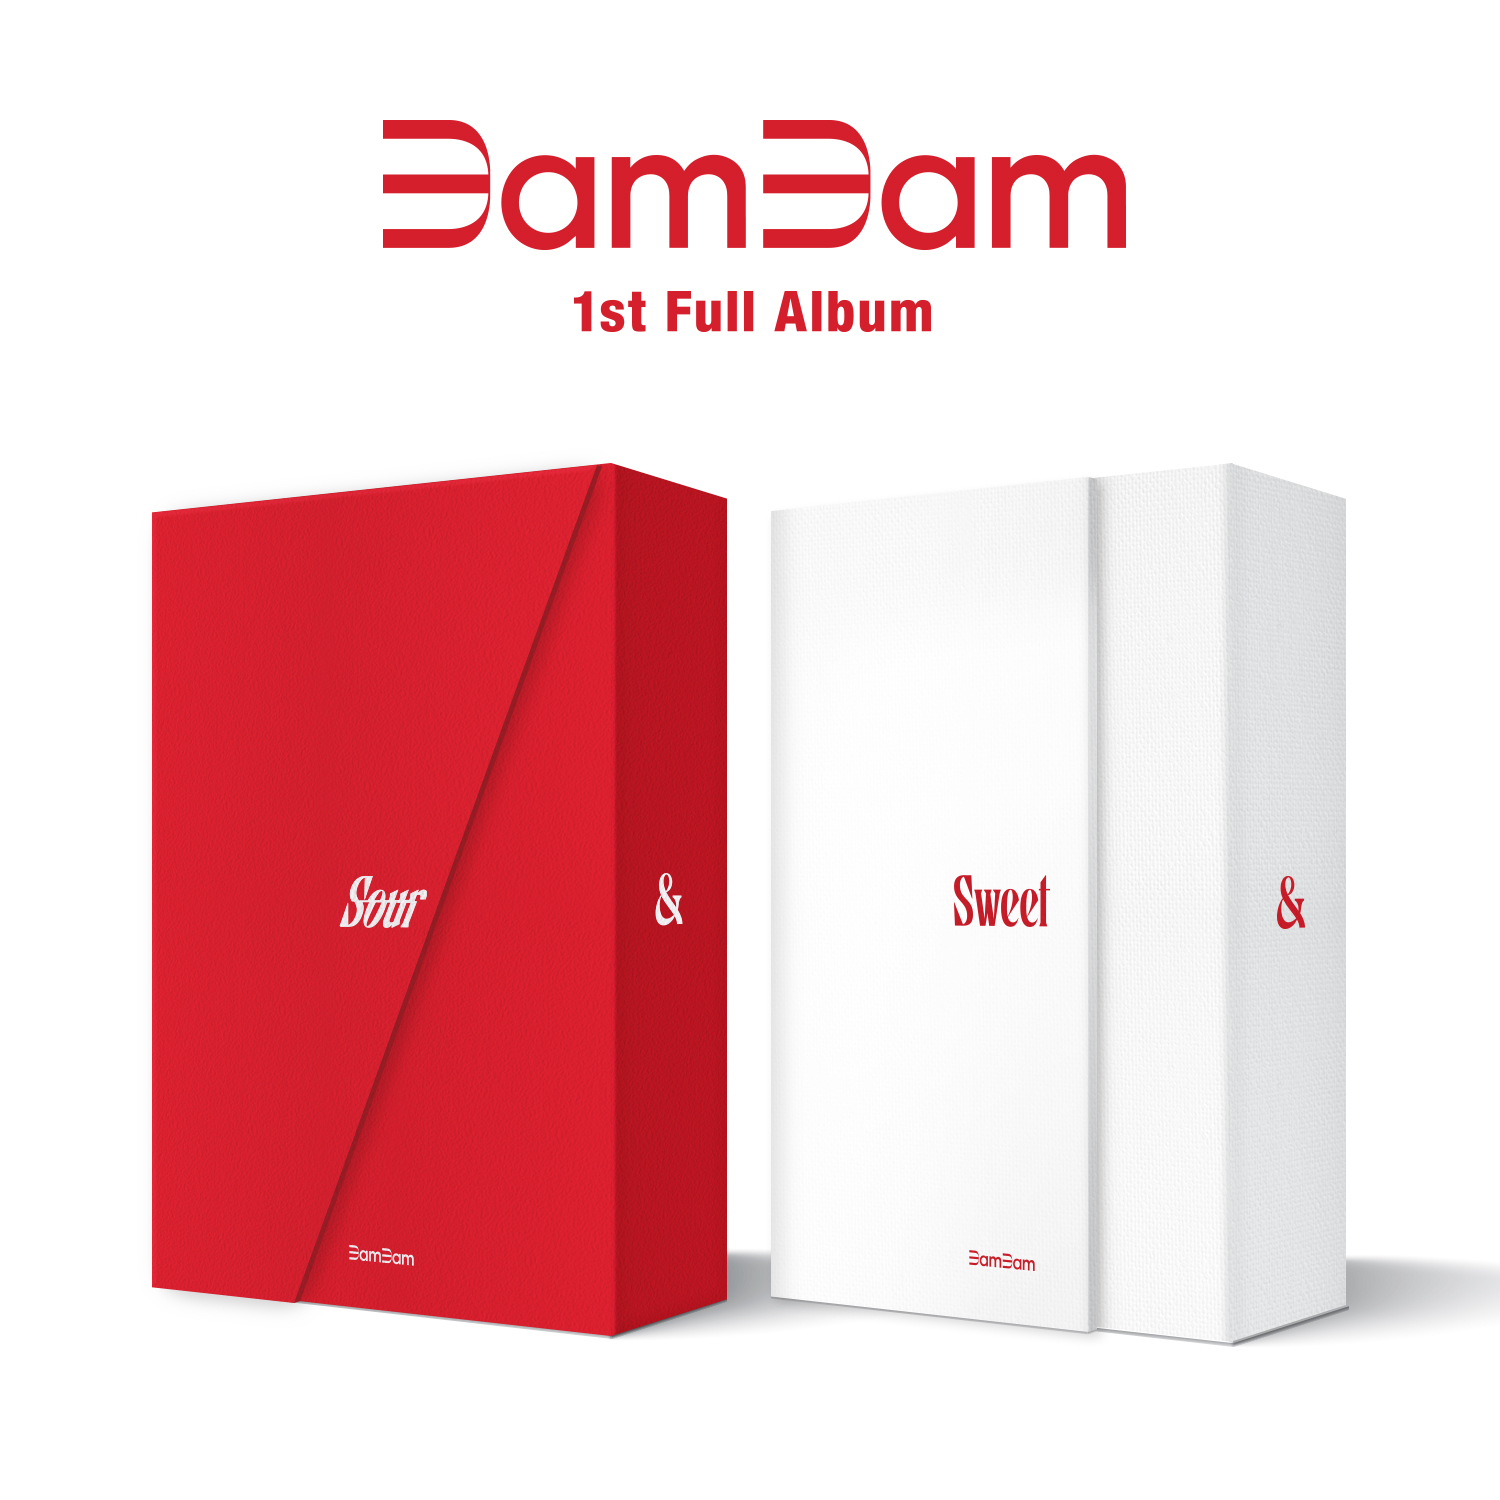 [全款 裸专][Ktown4u Special Gift] [2CD 套装] BamBam - 正规1辑 [Sour & Sweet] (Sour Ver. + Sweet Ver.)_daynnight_for_got7